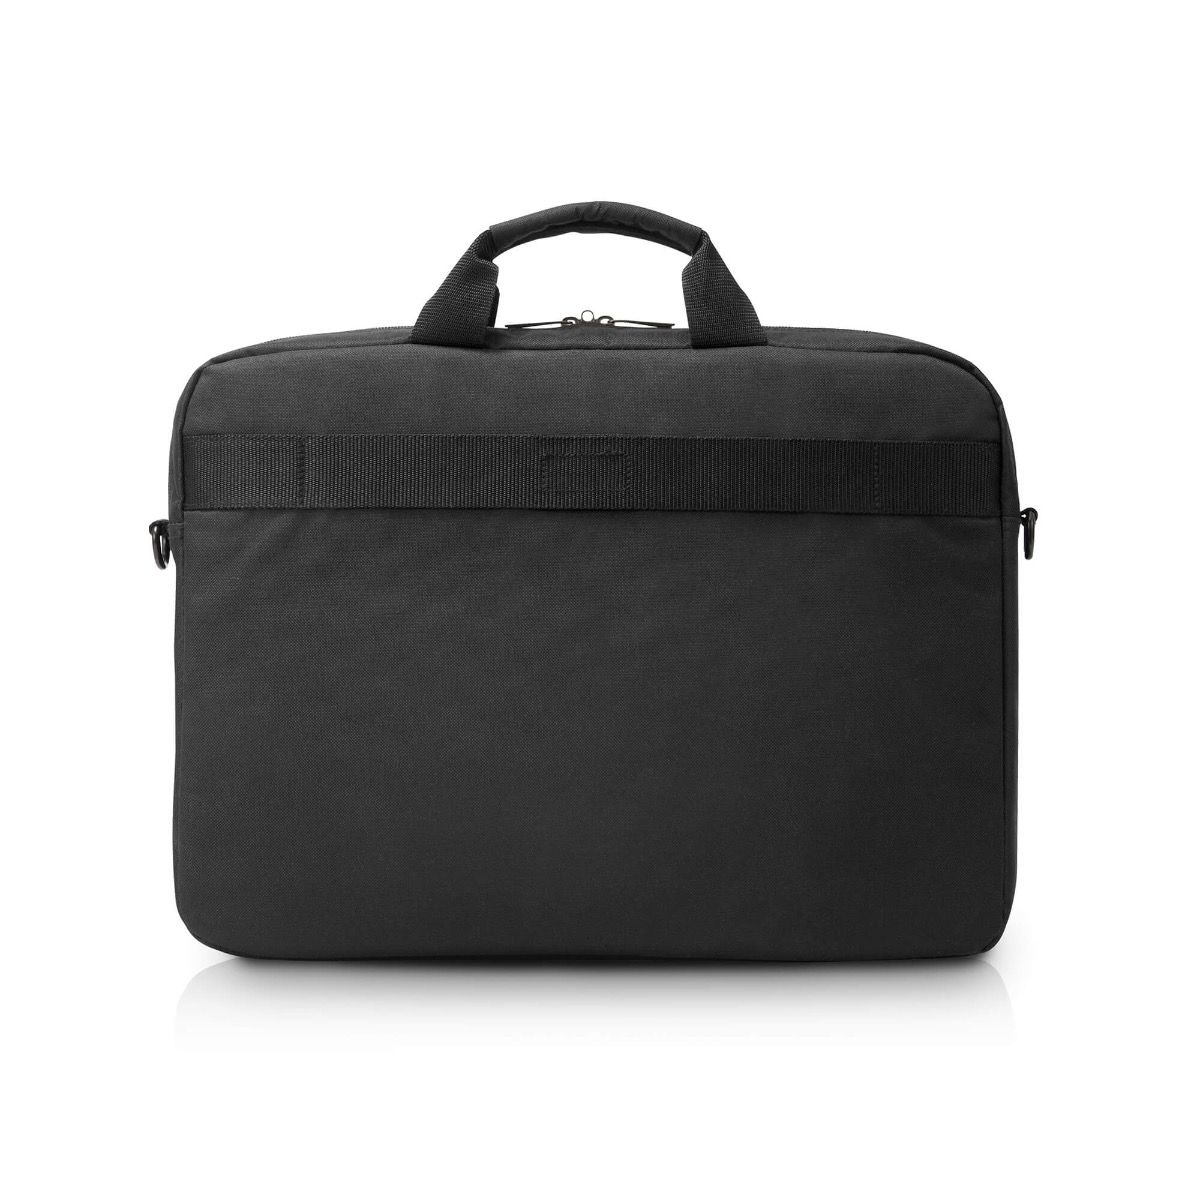 New Bags Notebooktasche Polyester schwarz Laptoptasche Trolleyschlaufe OTD218S 